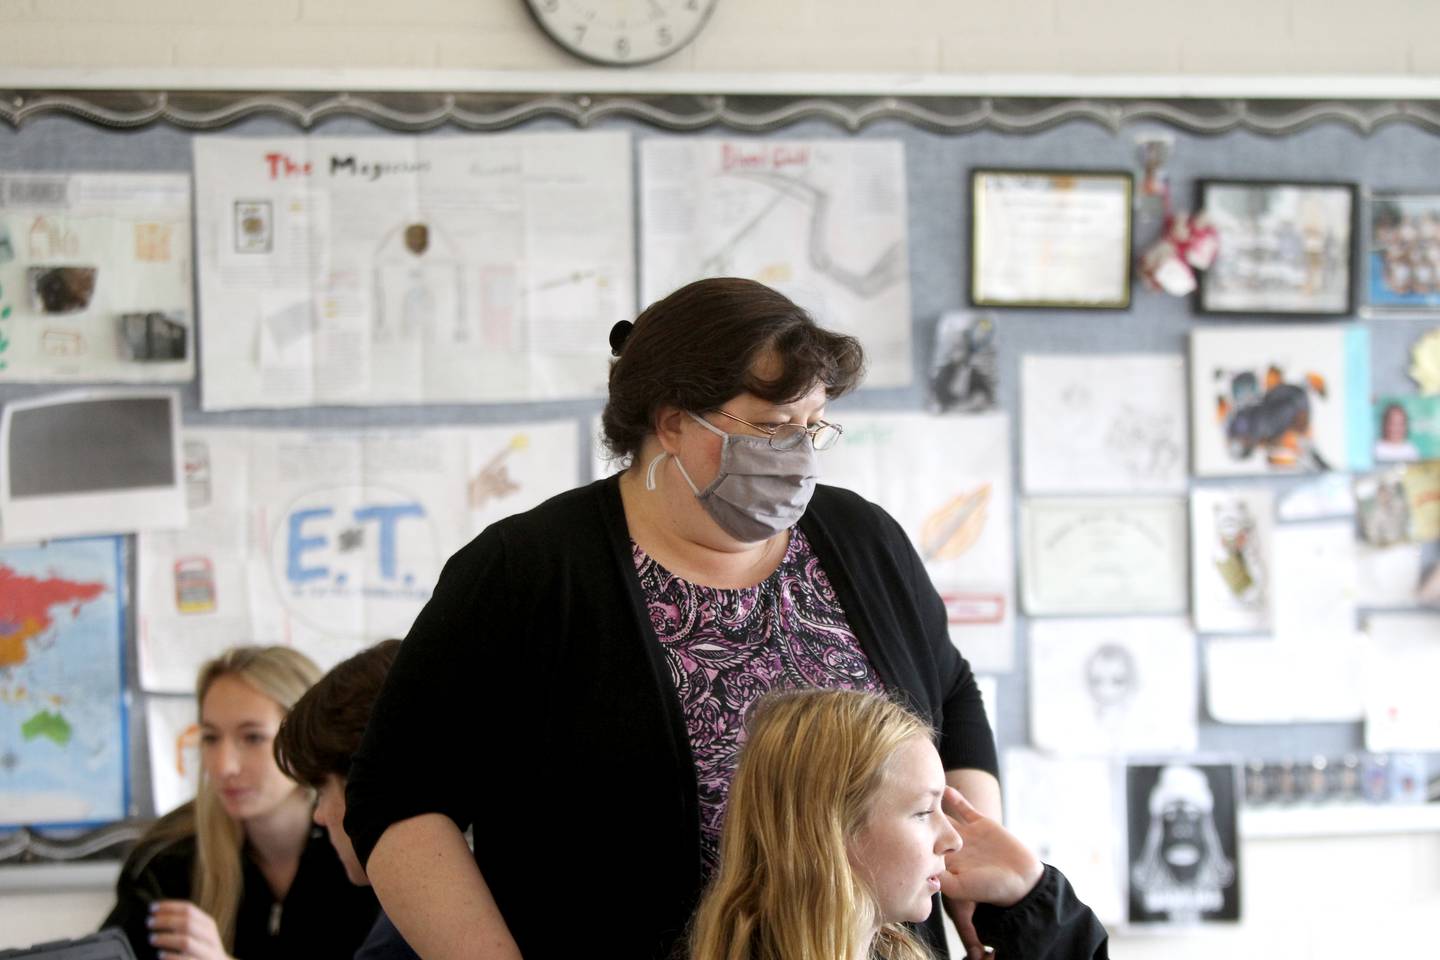 Jennifer Murphy just began an assignment as a long-term substitute teacher at Kaneland High School.